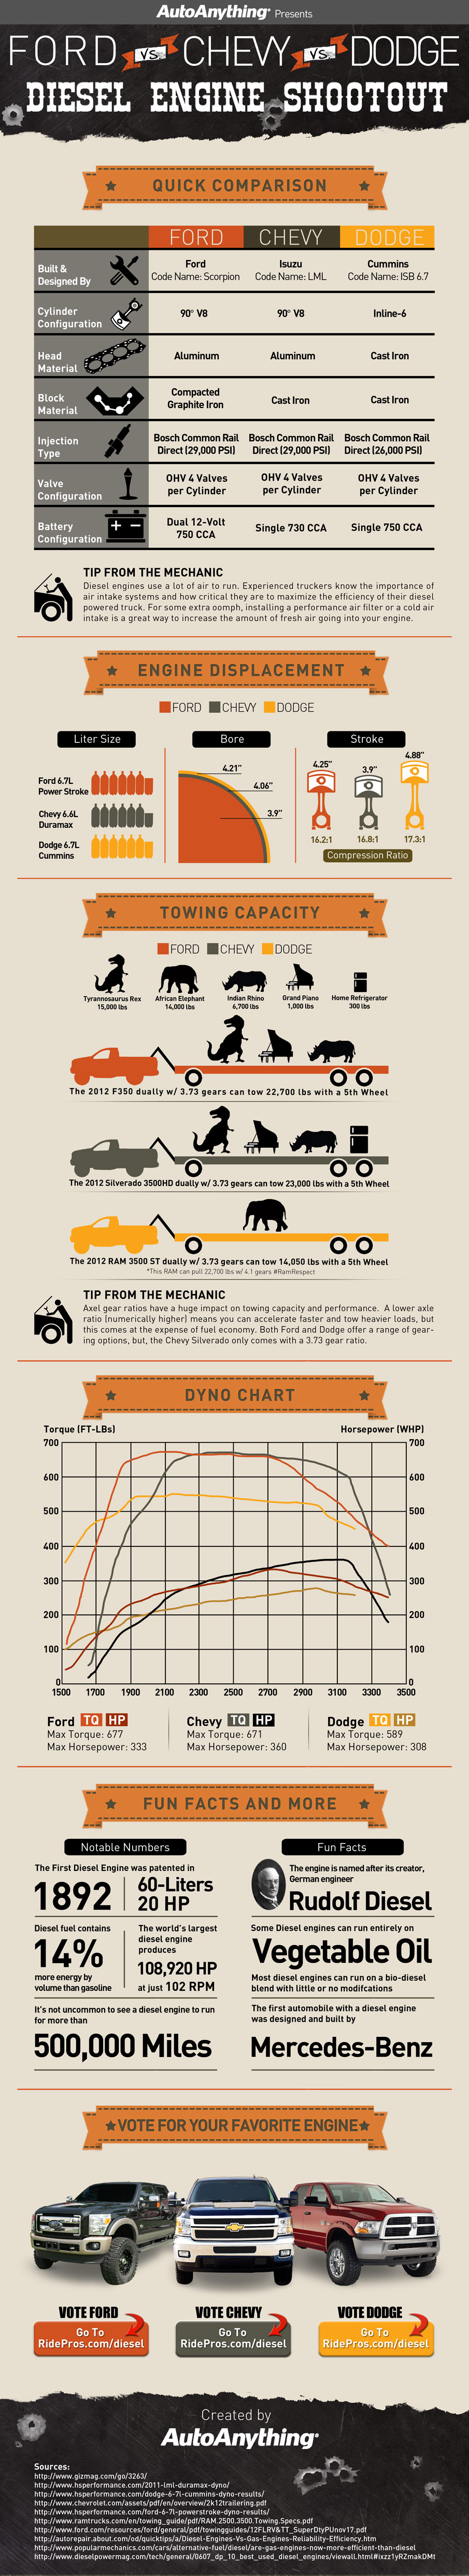 Diesel Engine Comparison